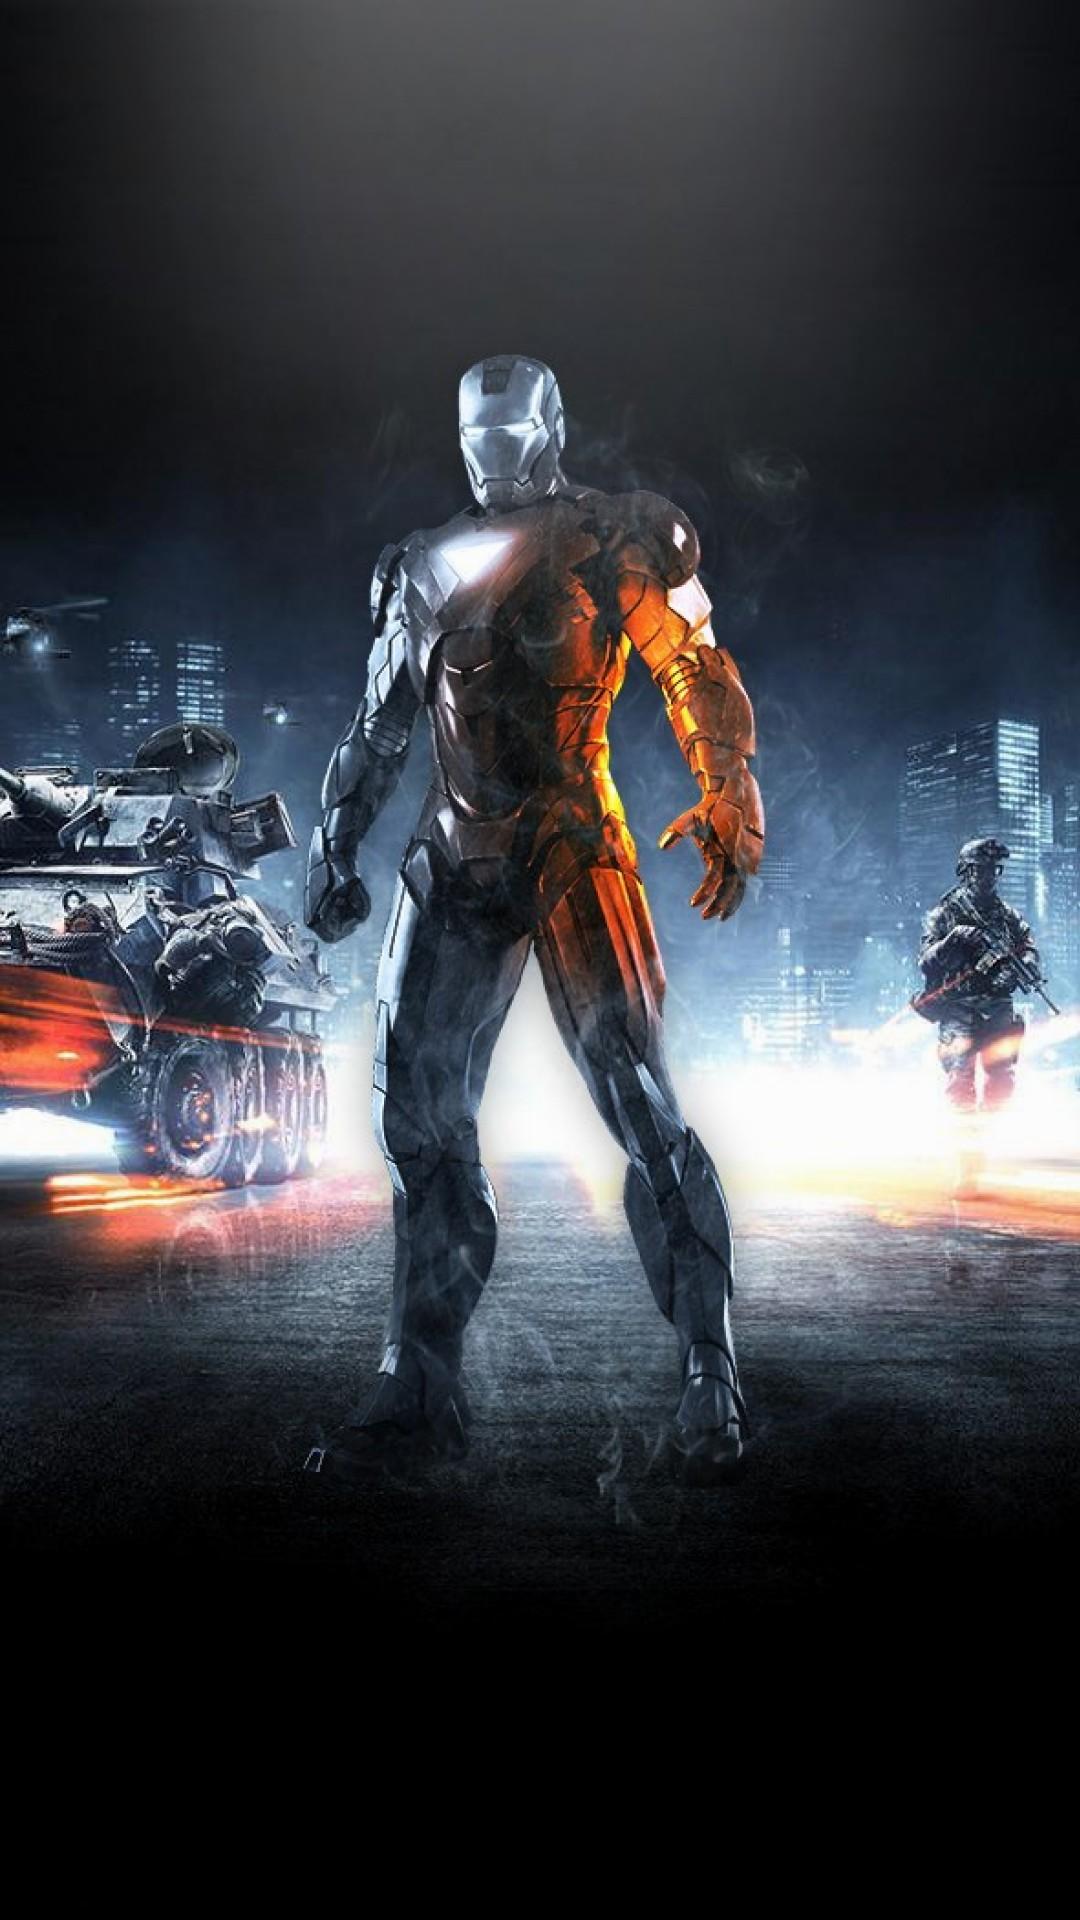 iron man wallpaper per android,gioco di avventura e azione,personaggio fittizio,film,supereroe,film d'azione